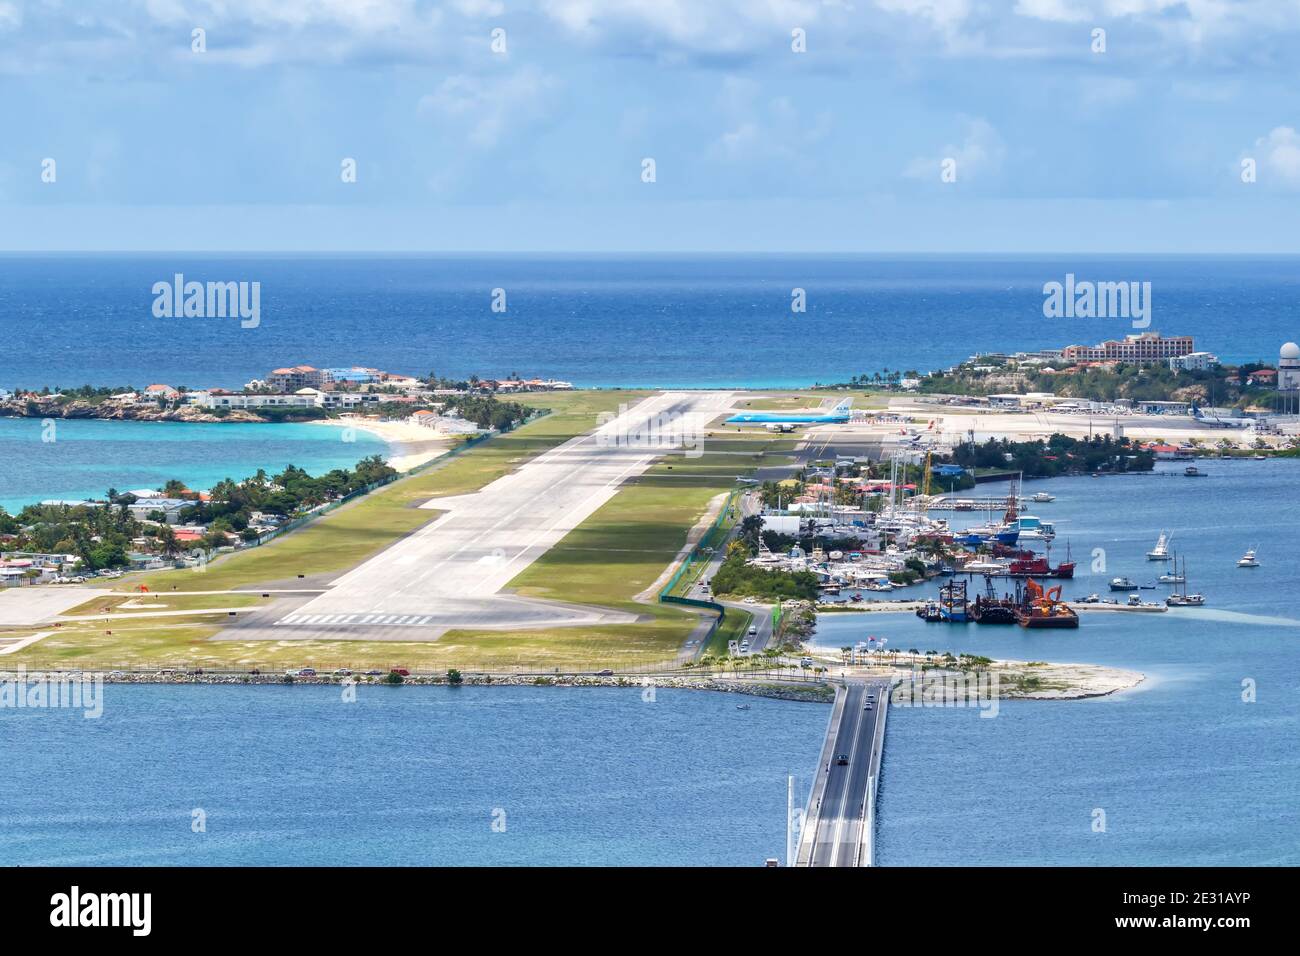 Sint Maarten, Antilles néerlandaises - 18 septembre 2016 : aéroport de Sint Maarten Saint-Martin (SXM) sur les Antilles néerlandaises dans les Caraïbes. Banque D'Images